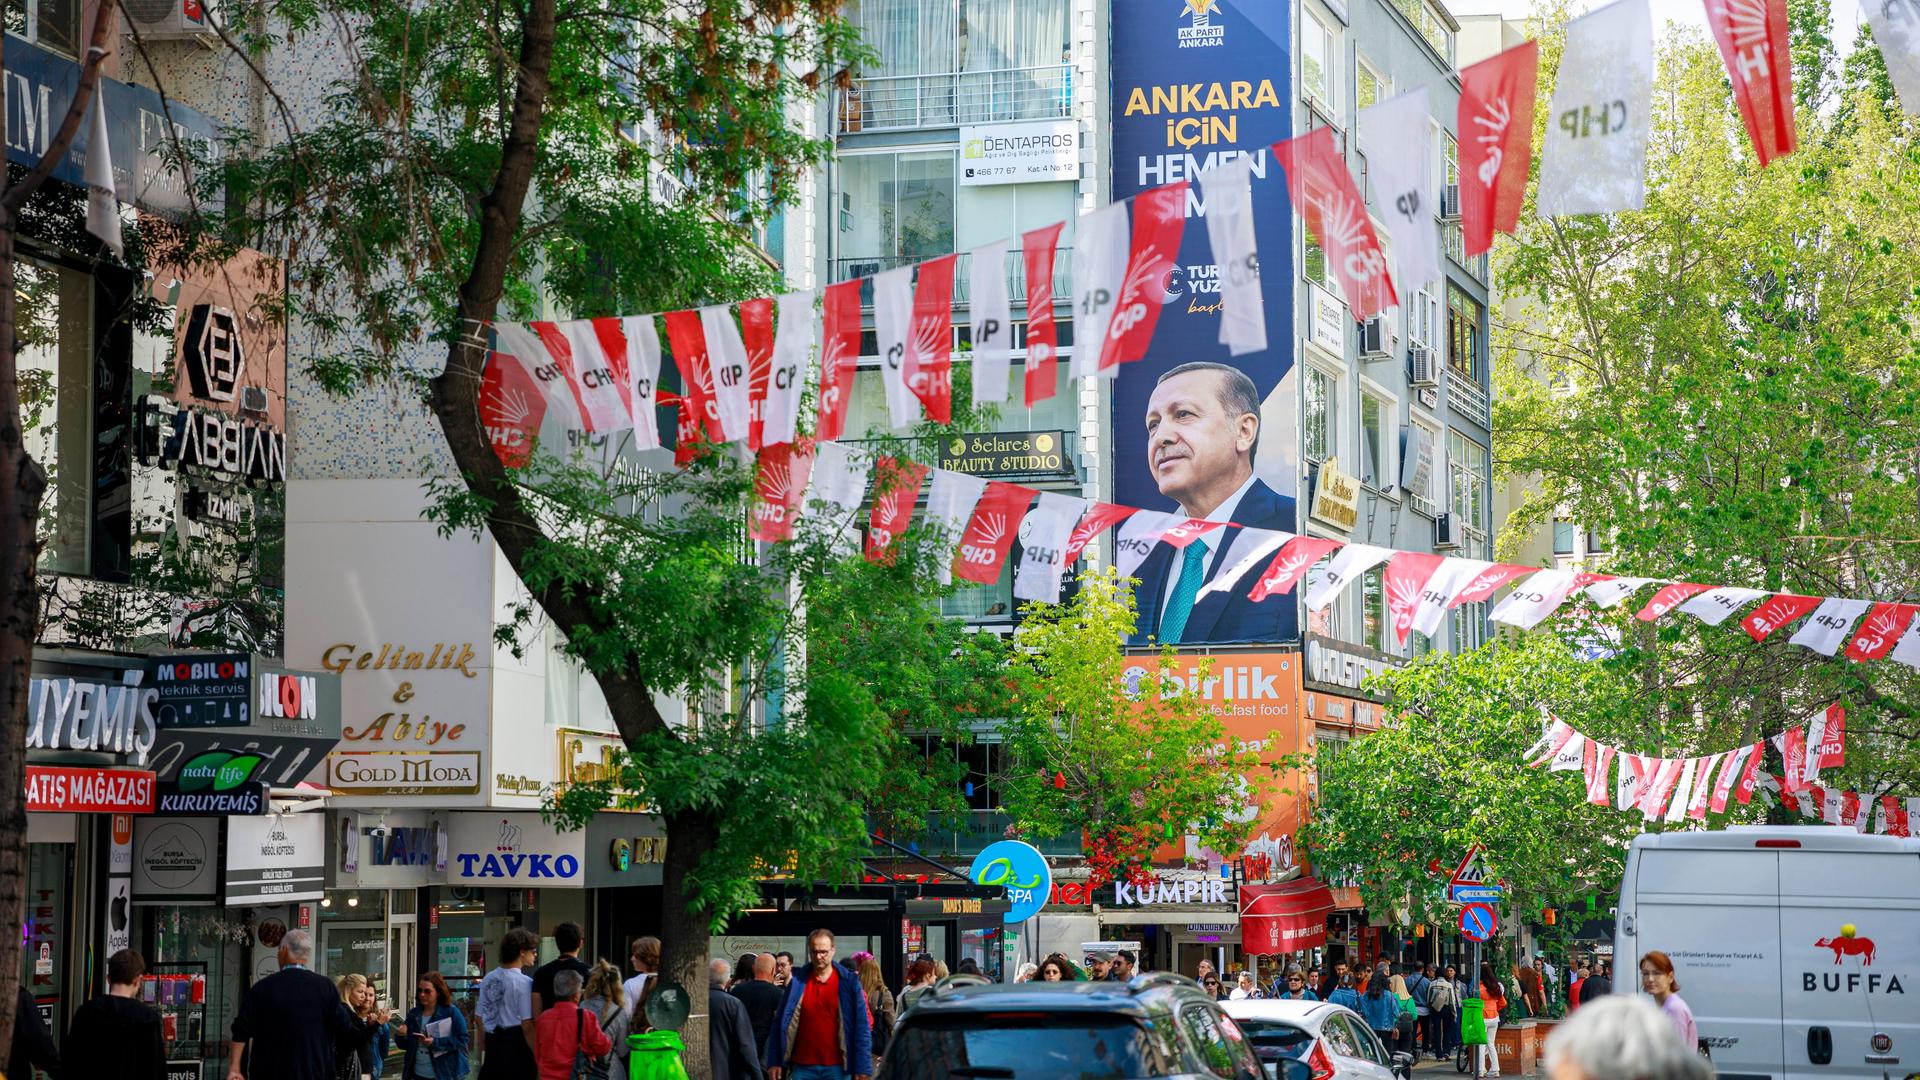 Wahlwerbung in Ankara: Wahlplakat von Amtsinhaber Erdogan und Fähnchen der oppositionellen Partei CHP auf einer Straße in der Innenstadt.